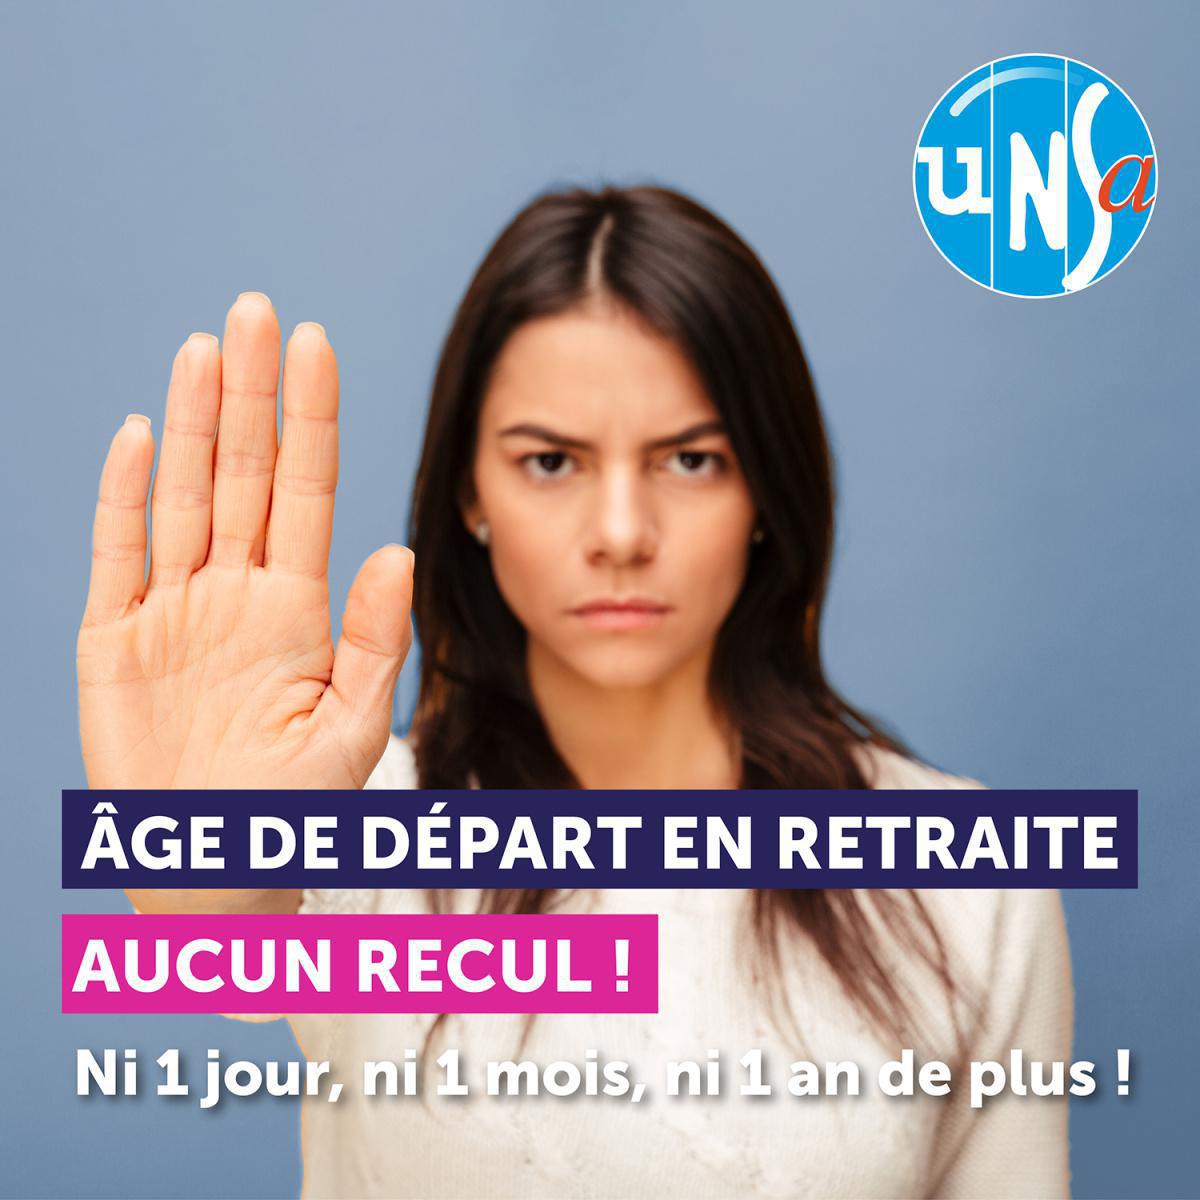 Réforme des retraites : Mobilisation du 7 février à Cherbourg